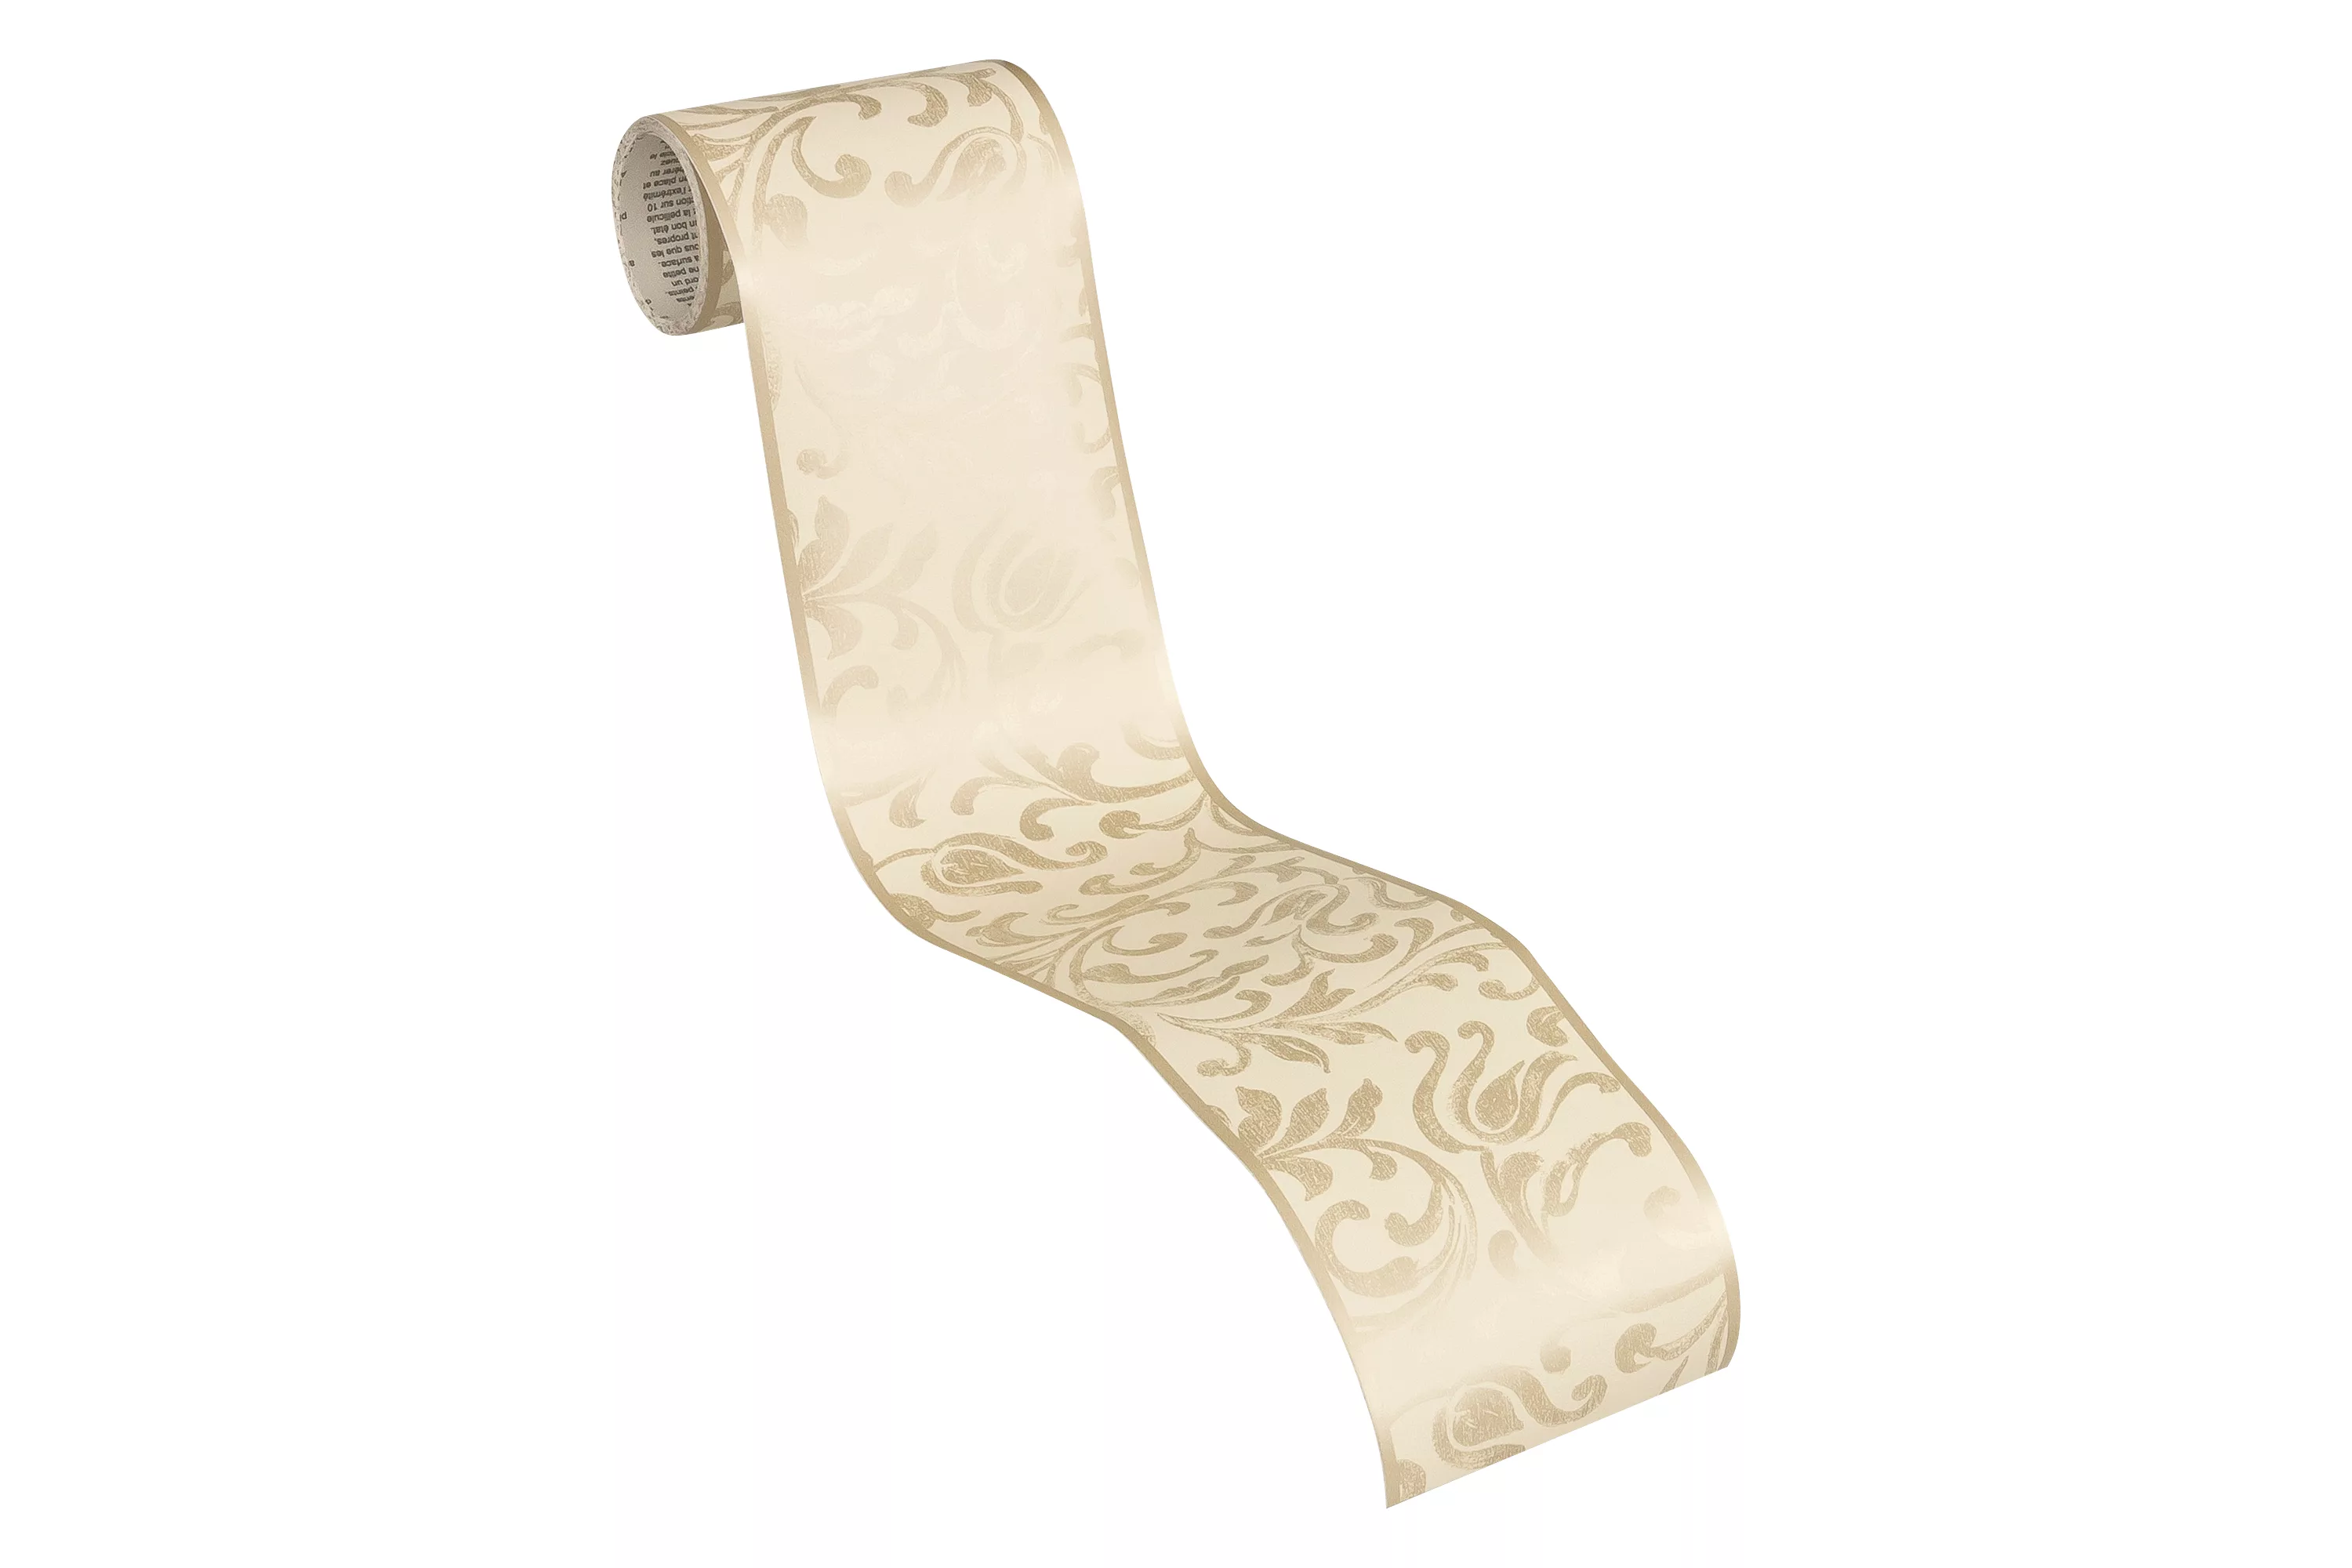 Bricoflor Mediterrane Tapeten Bordüre in Beige Gold Ornament Tapetenbordüre günstig online kaufen